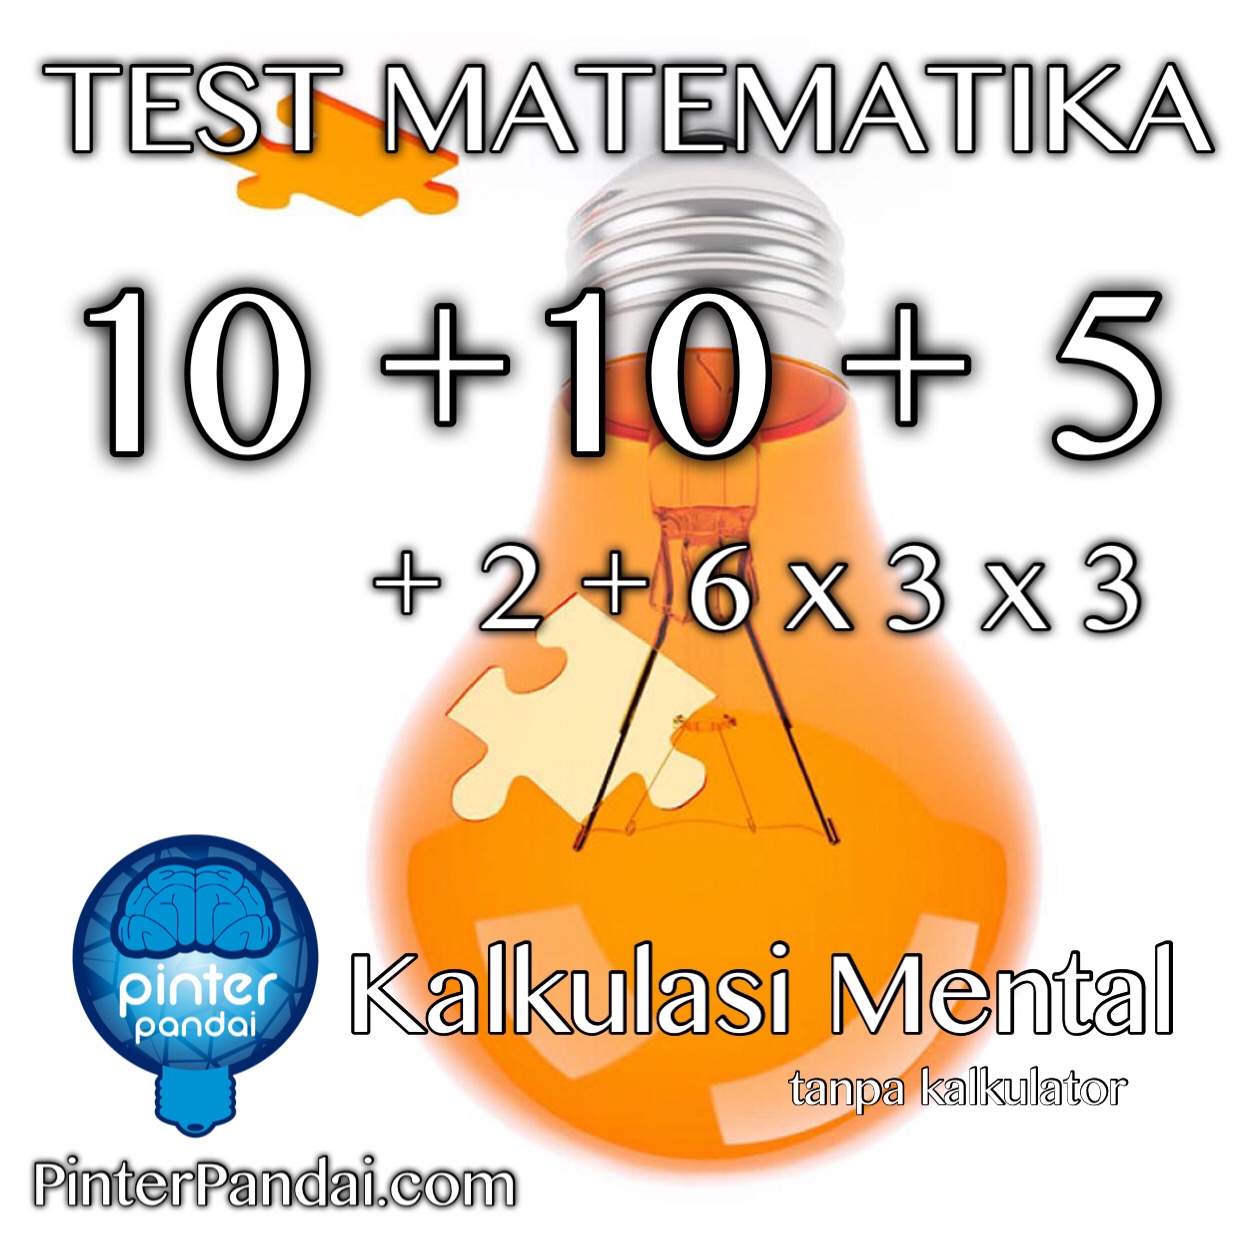 test matematika kalkulator mental 10 + 10 + 5 + 2 +6 x 3 x 3 = ??